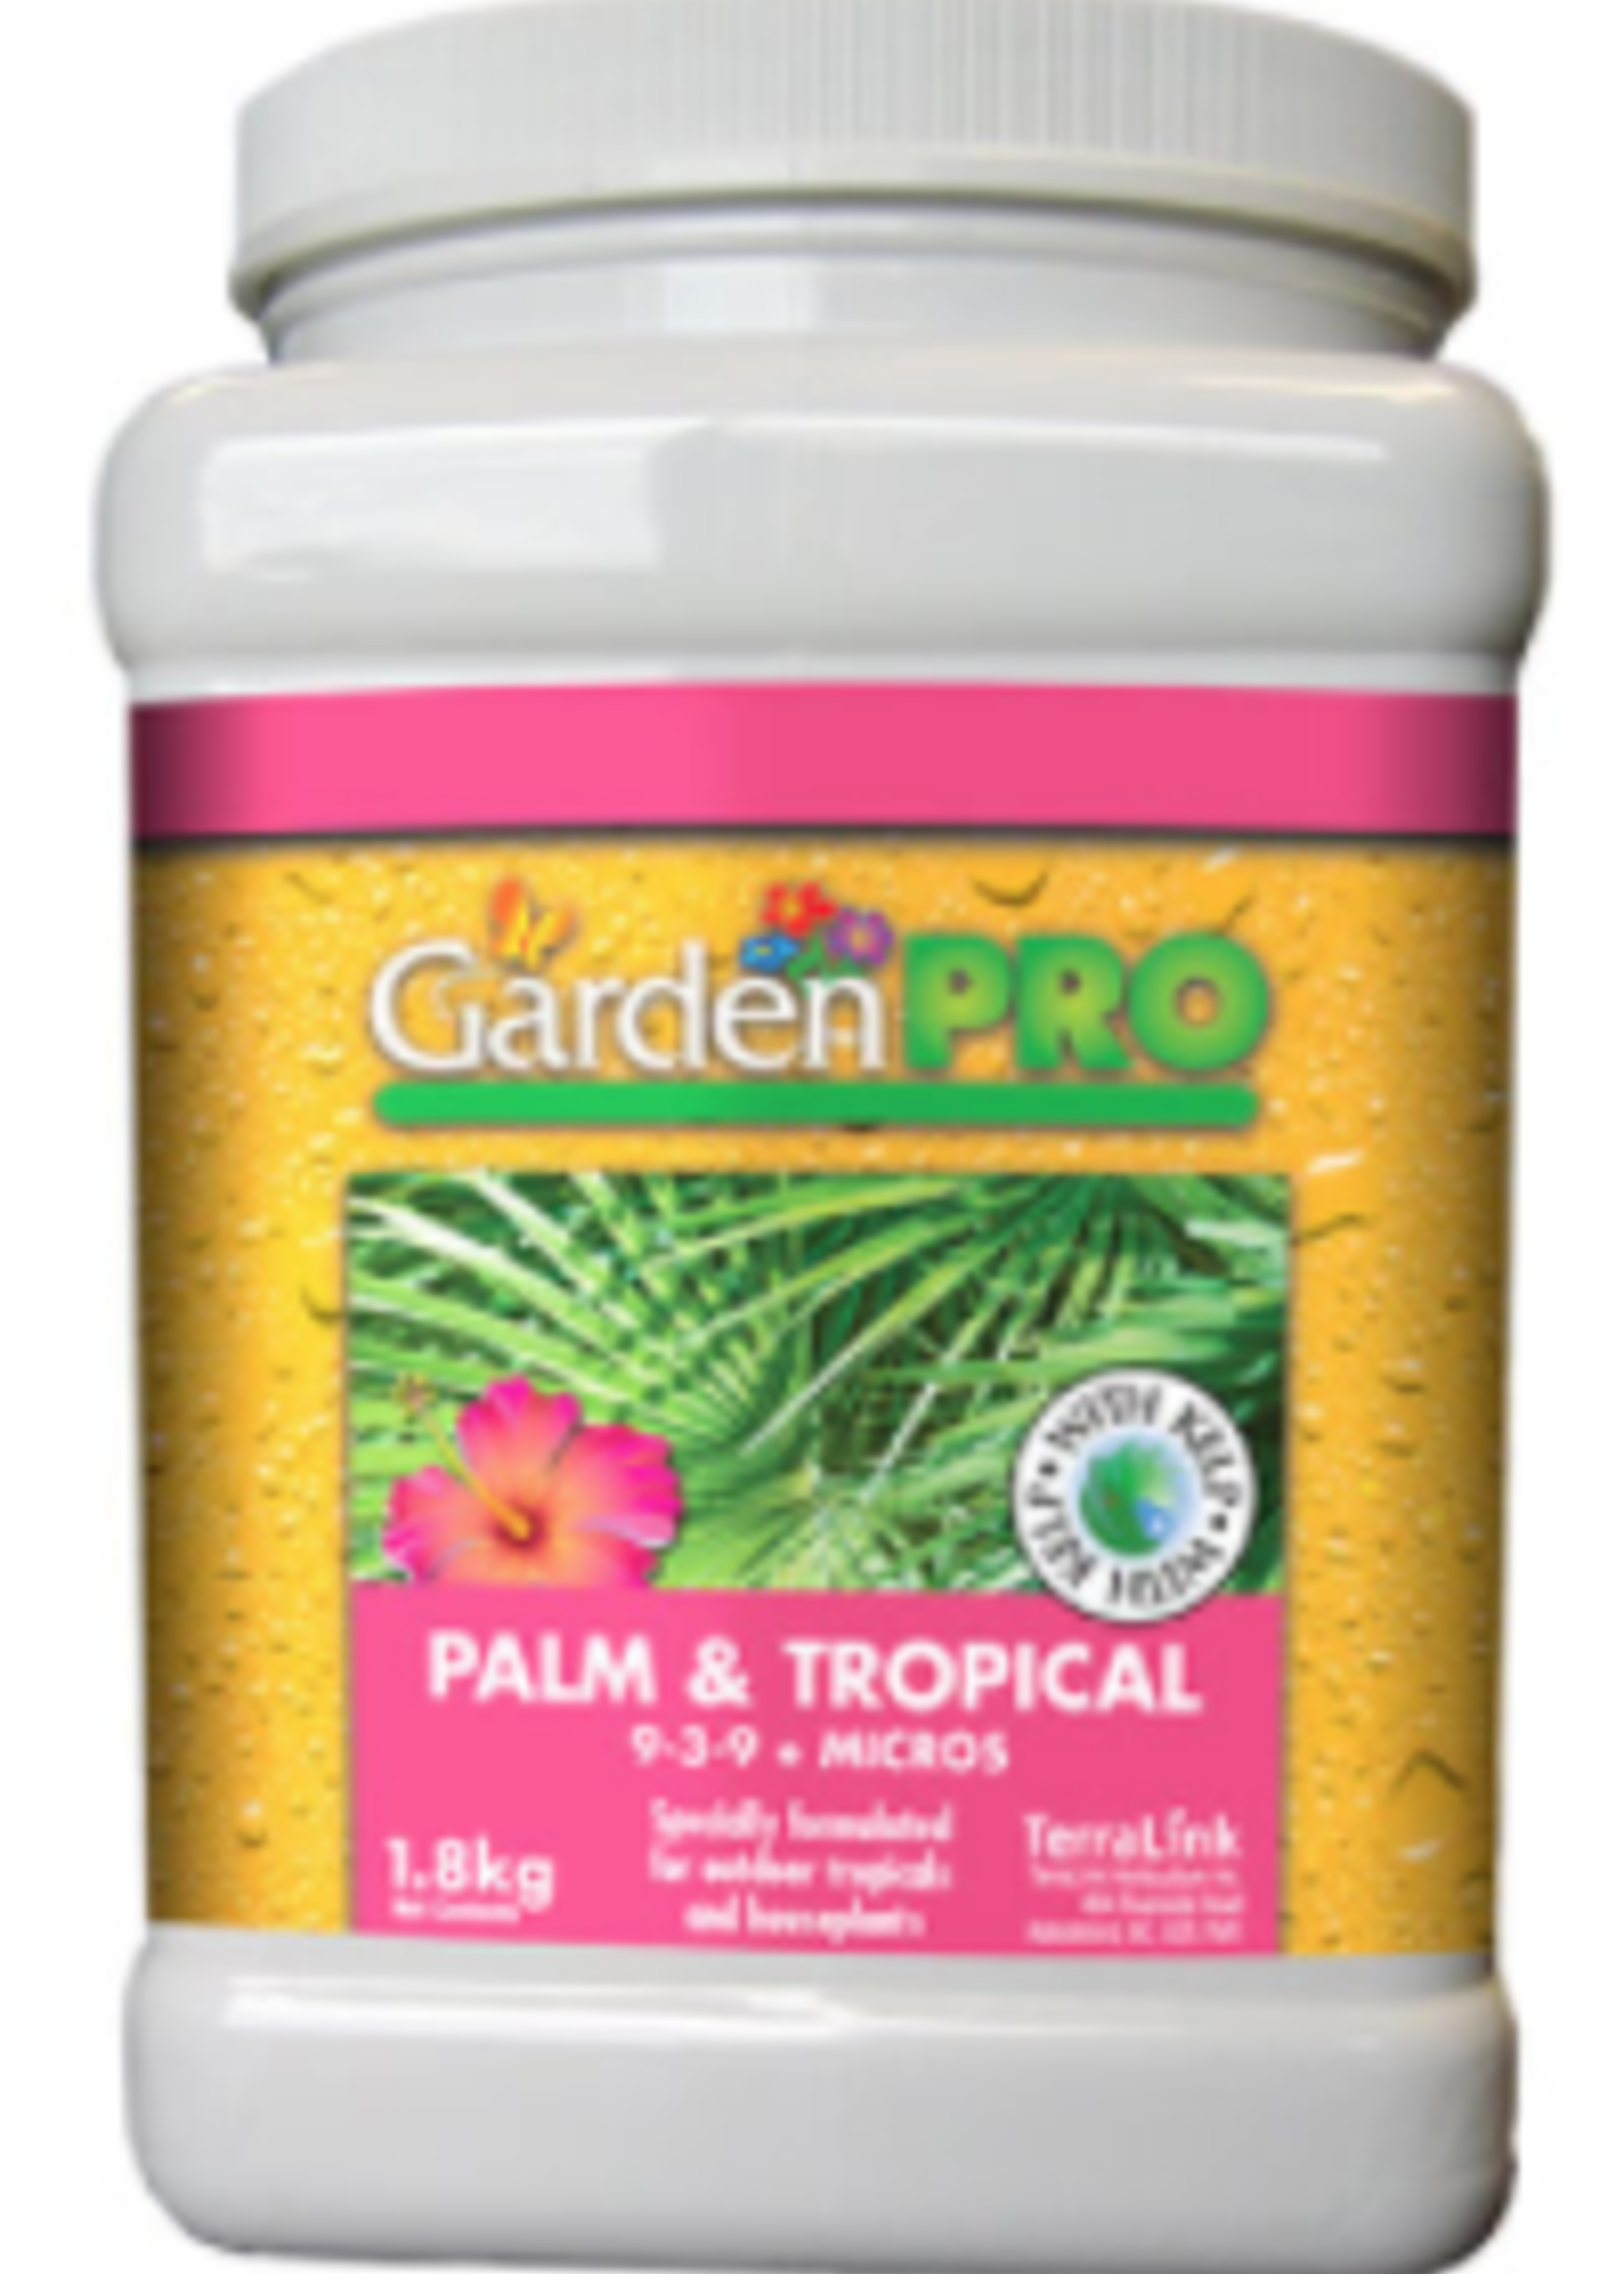 Garden Pro Palm & Tropical 9-3-9, 1.8kg